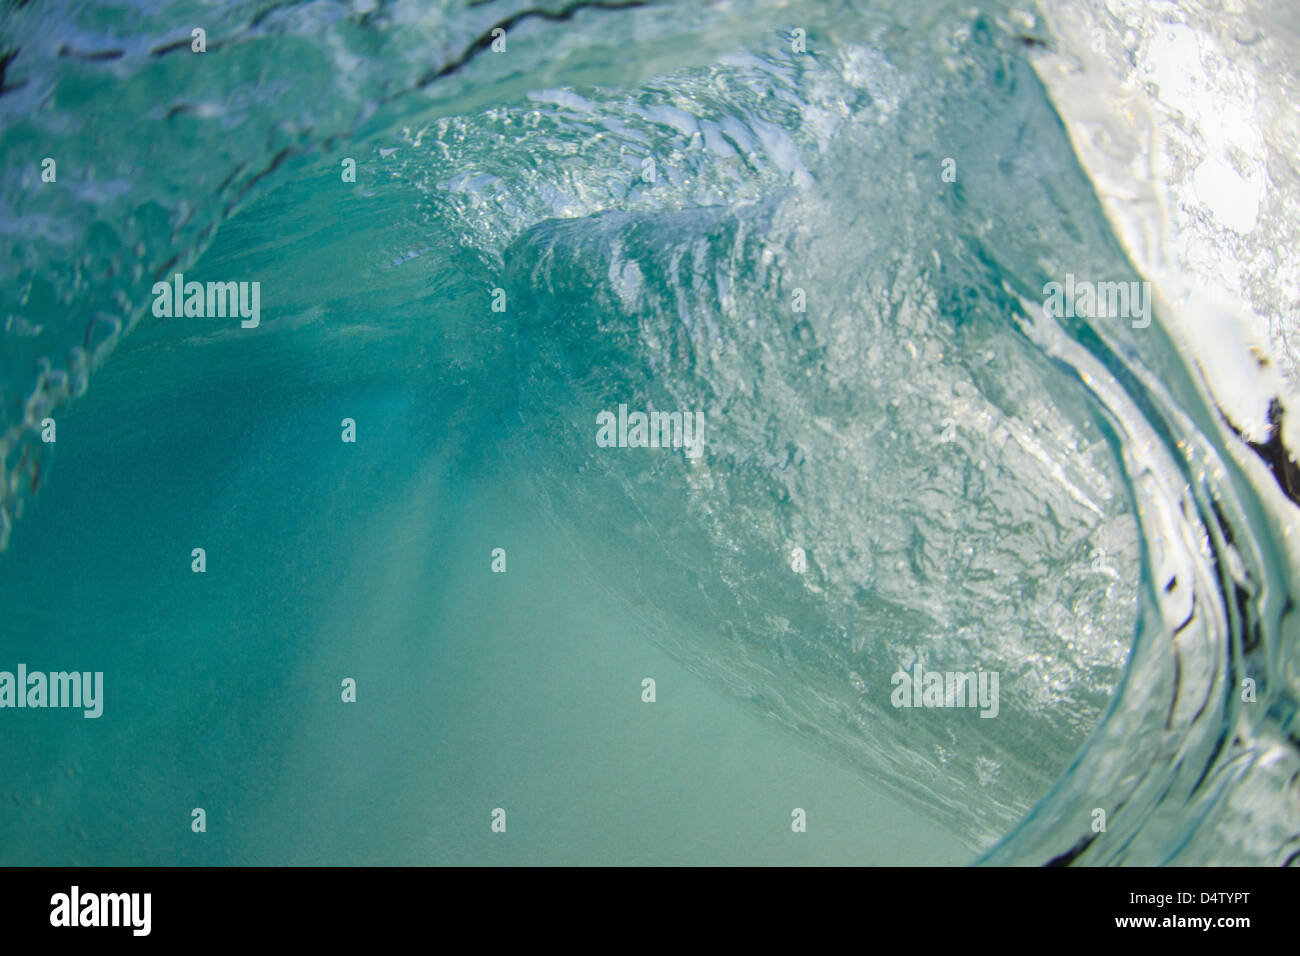 Absturz Welle unter Wasser gesehen Stockfoto